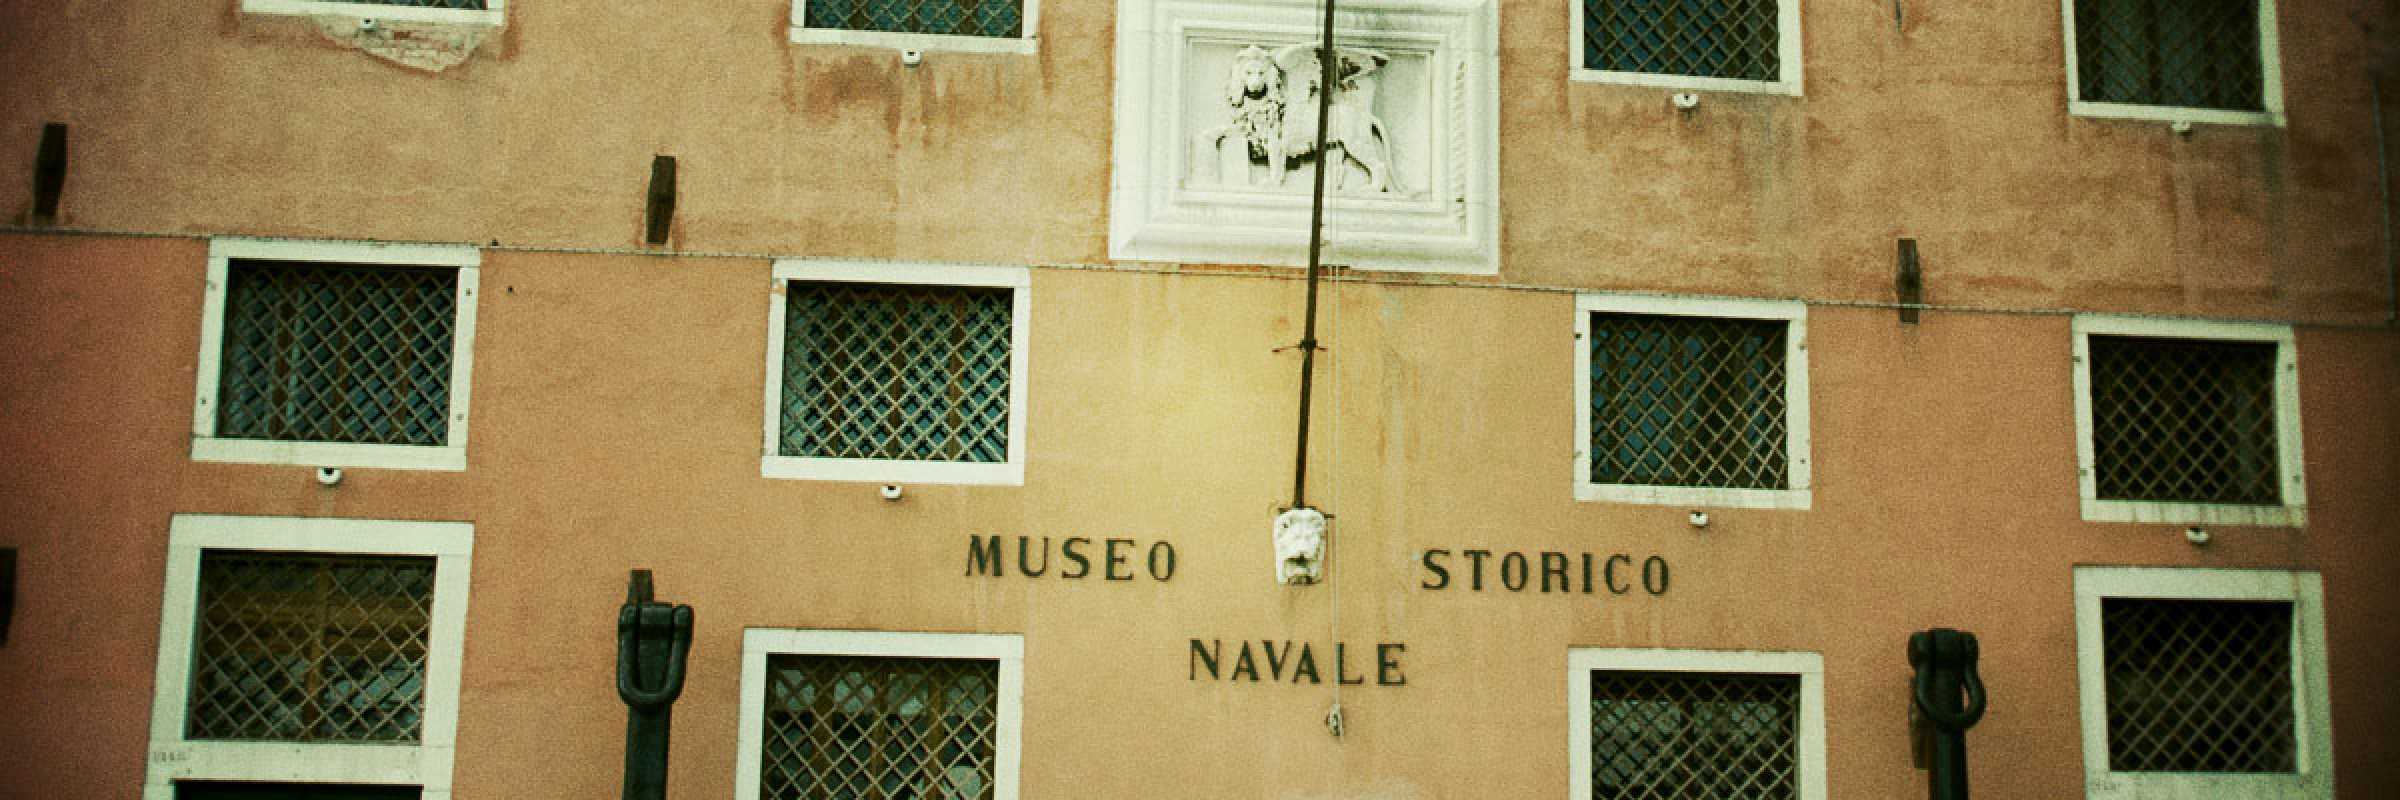 La facciata del Museo Storico Navale